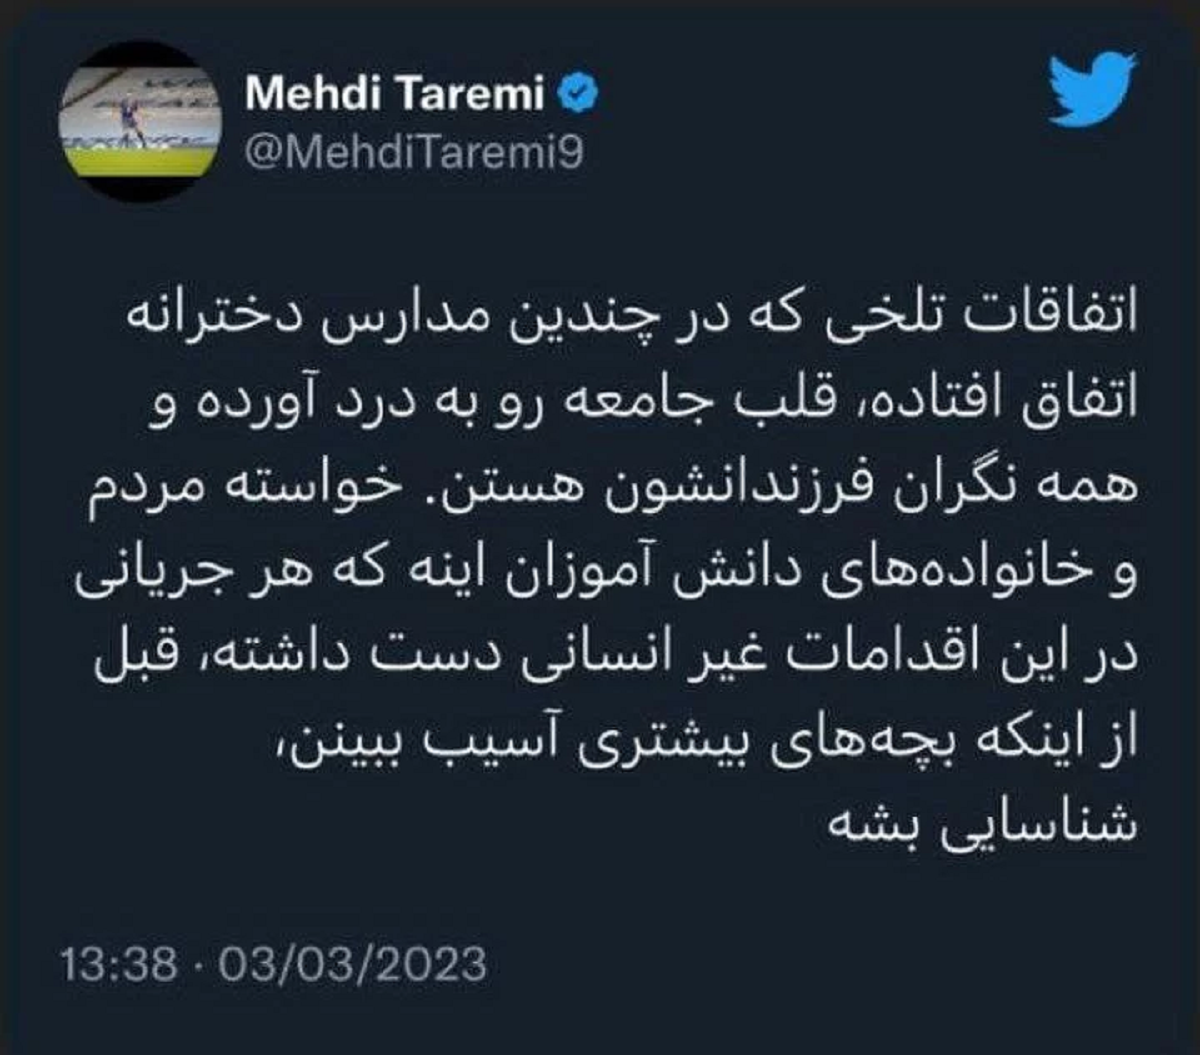 واکنش مهدی طارمی در توئیتر به مسمویت دانش آموزن